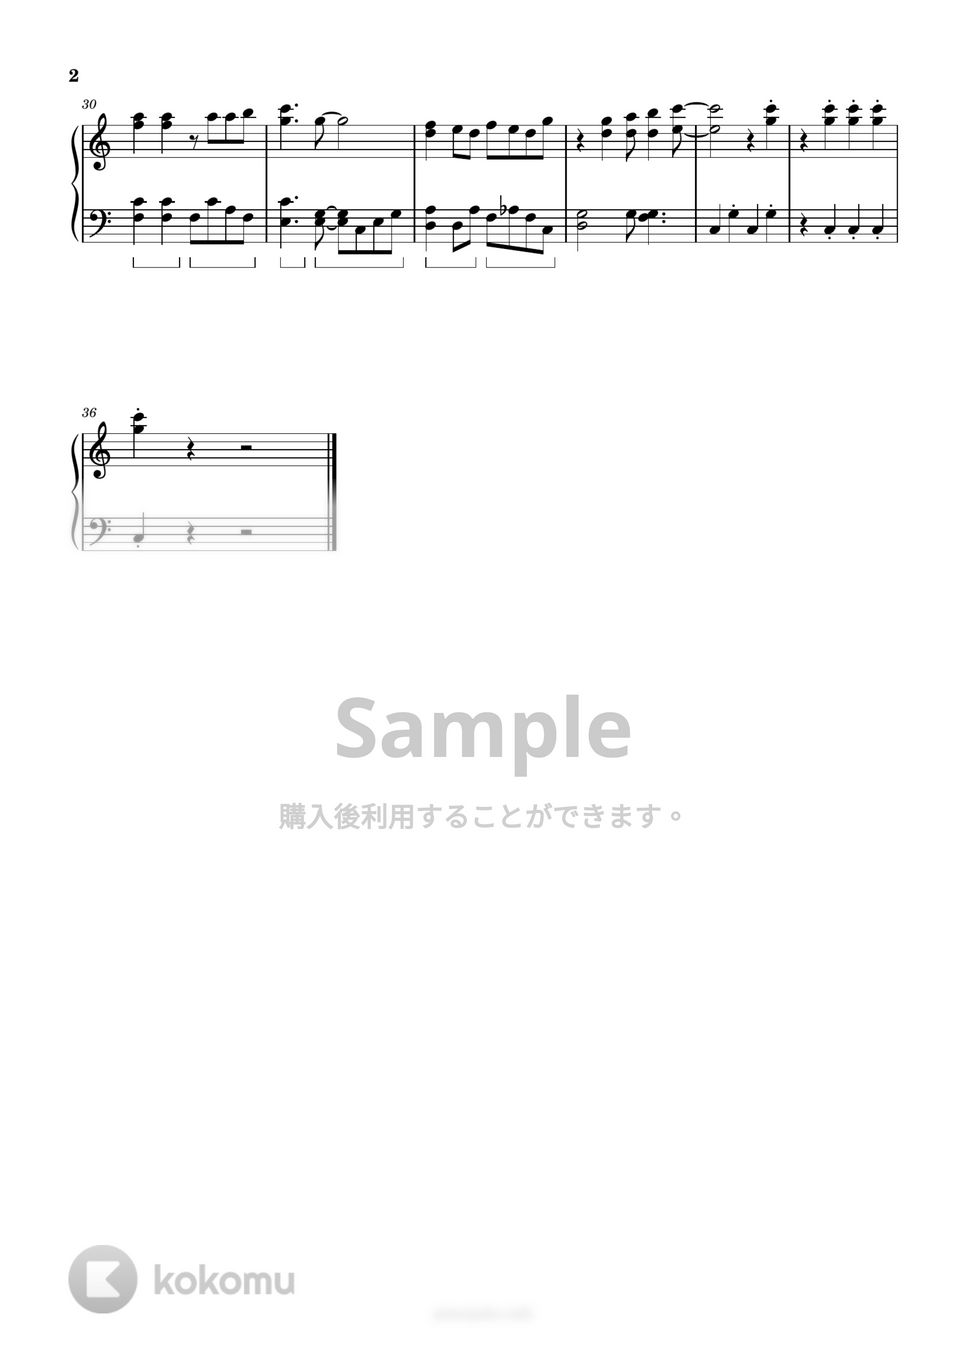 ドリーミング - アンパンマンたいそう (簡単楽譜) by ピアノ塾